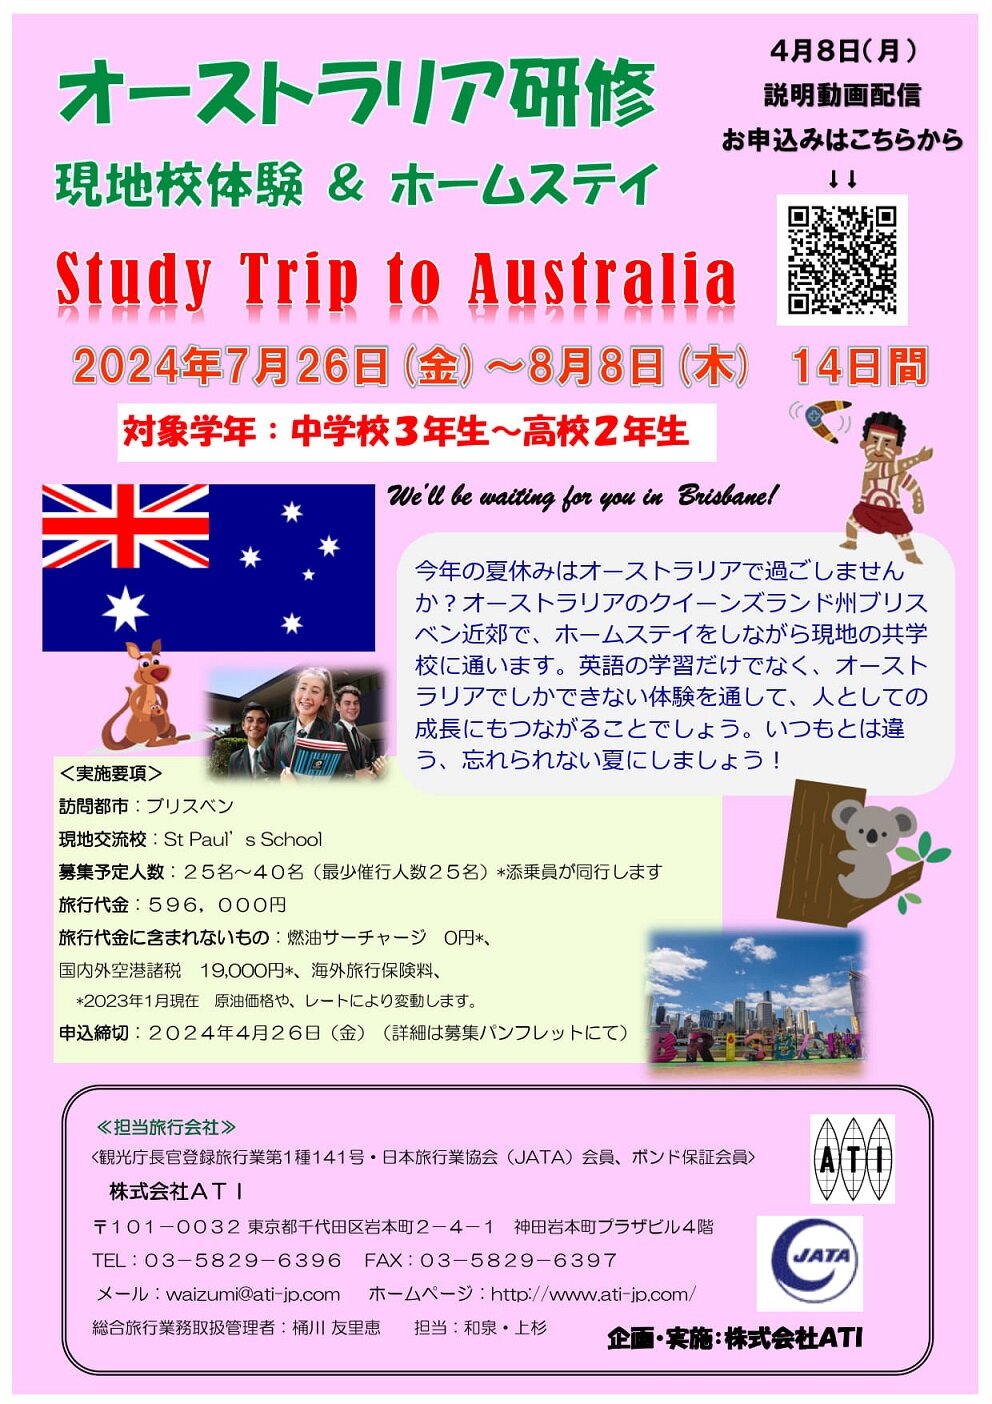 study trip to Australia 2024.jpg